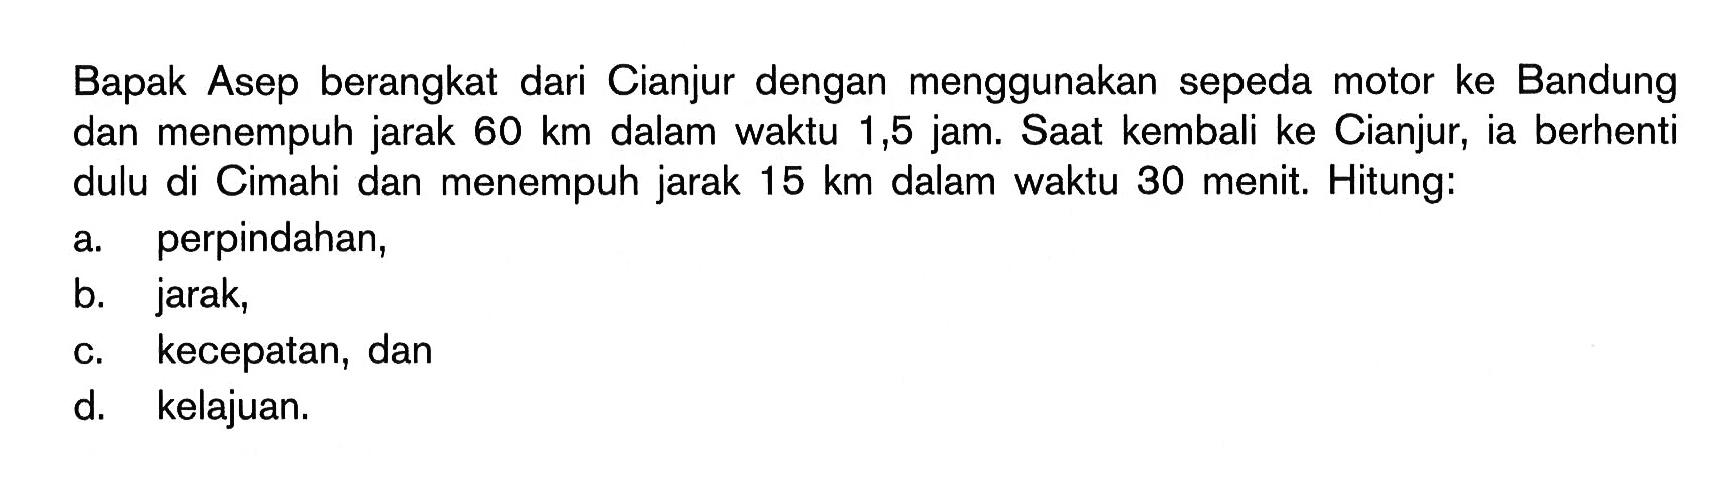 Bapak Asep berangkat dari Cianjur dengan menggunakan sepeda motor ke Bandung dan menempuh jarak 60 km dalam waktu 1,5 jam. Saat kembali ke Cianjur, ia berhenti dulu di Cimahi dan menempuh jarak 15 km dalam waktu 30 menit. Hitung: a. perpindahan, b. jarak, c. kecepatan, dan d. kelajuan. 